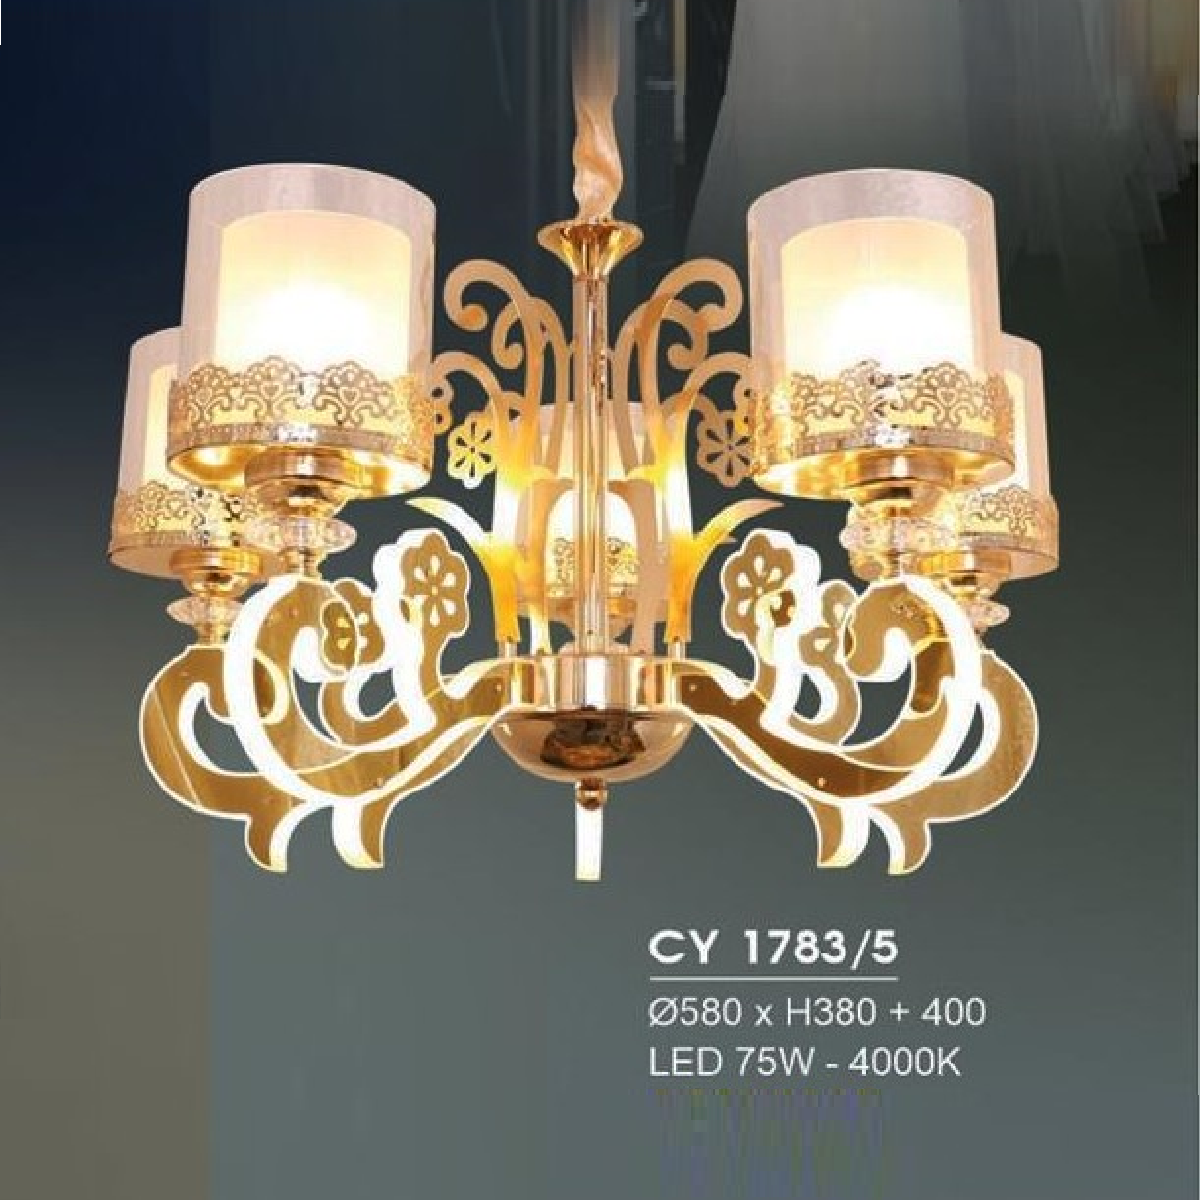 HF - CY 1783/5: Đèn chùm LED 5 tay -  KT: Ø580mm x H380mm + 400mm - Đèn LED 75W ánh sáng vàng 4000K